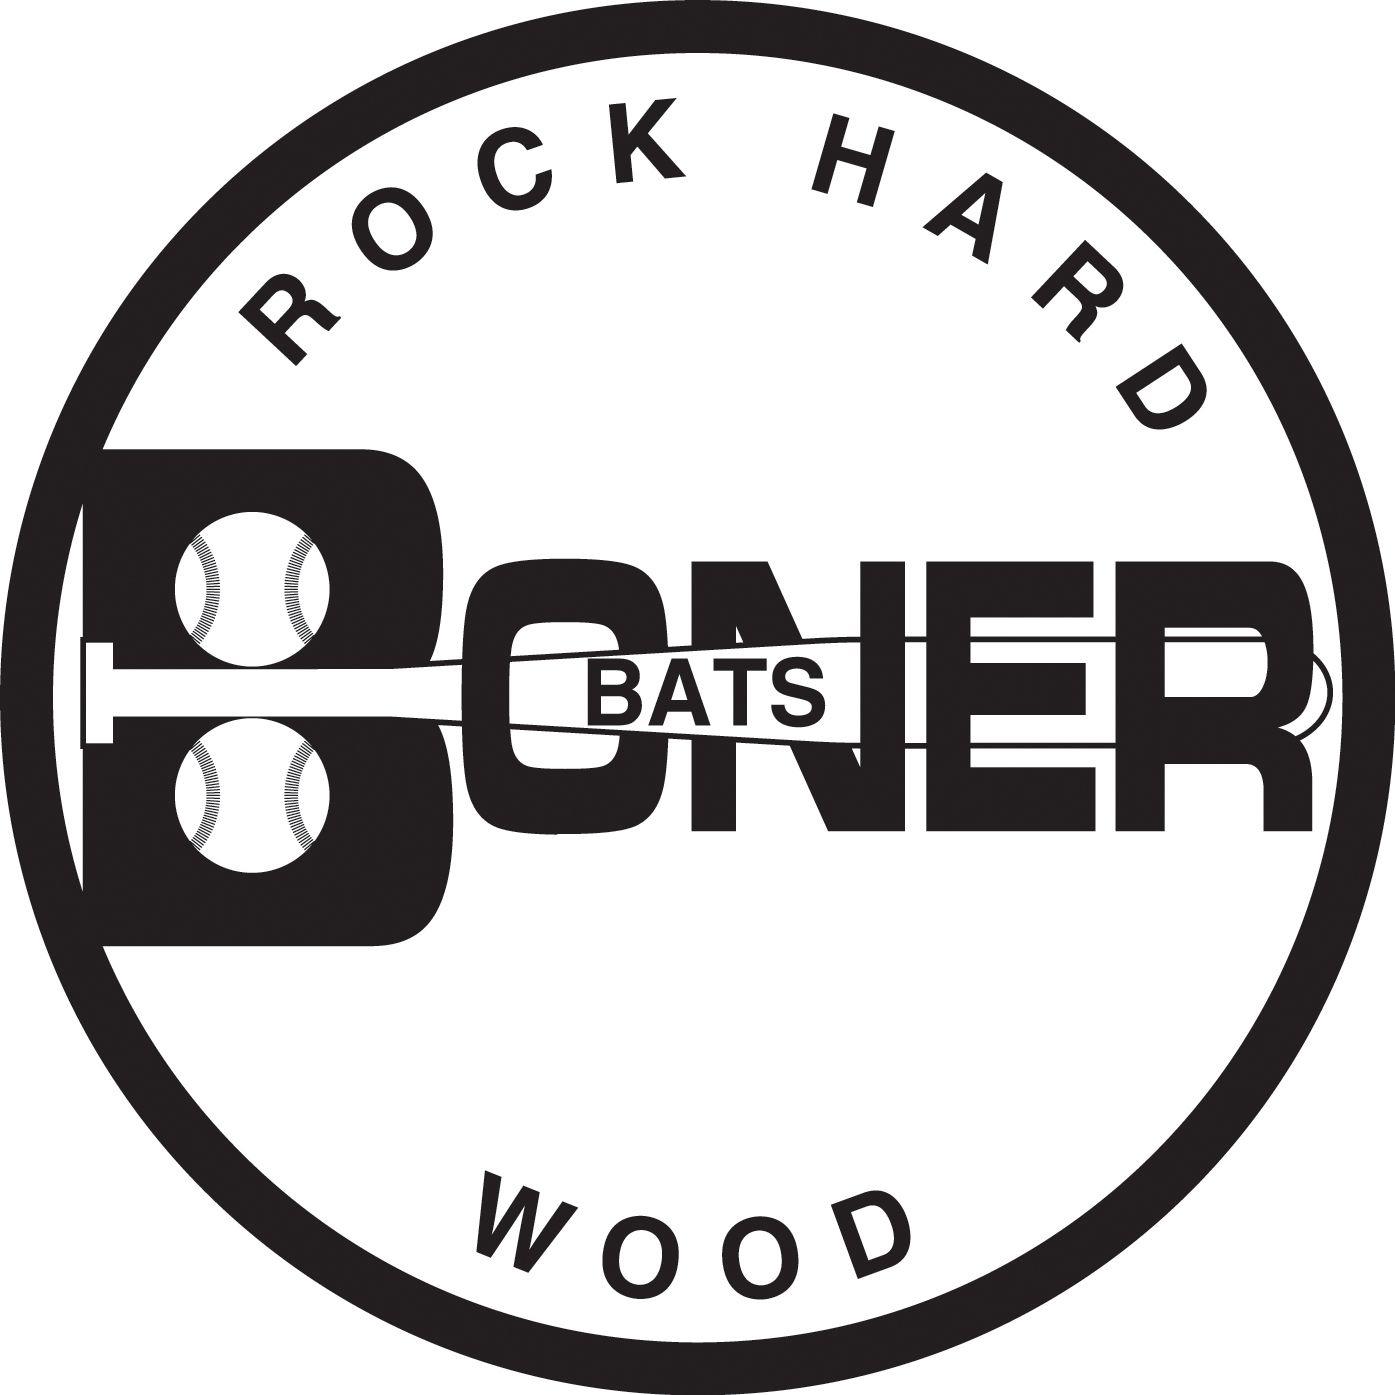 Baseball Bat Company Logo - BONER BATS - Rock Hard Maple Wood Baseball Bats